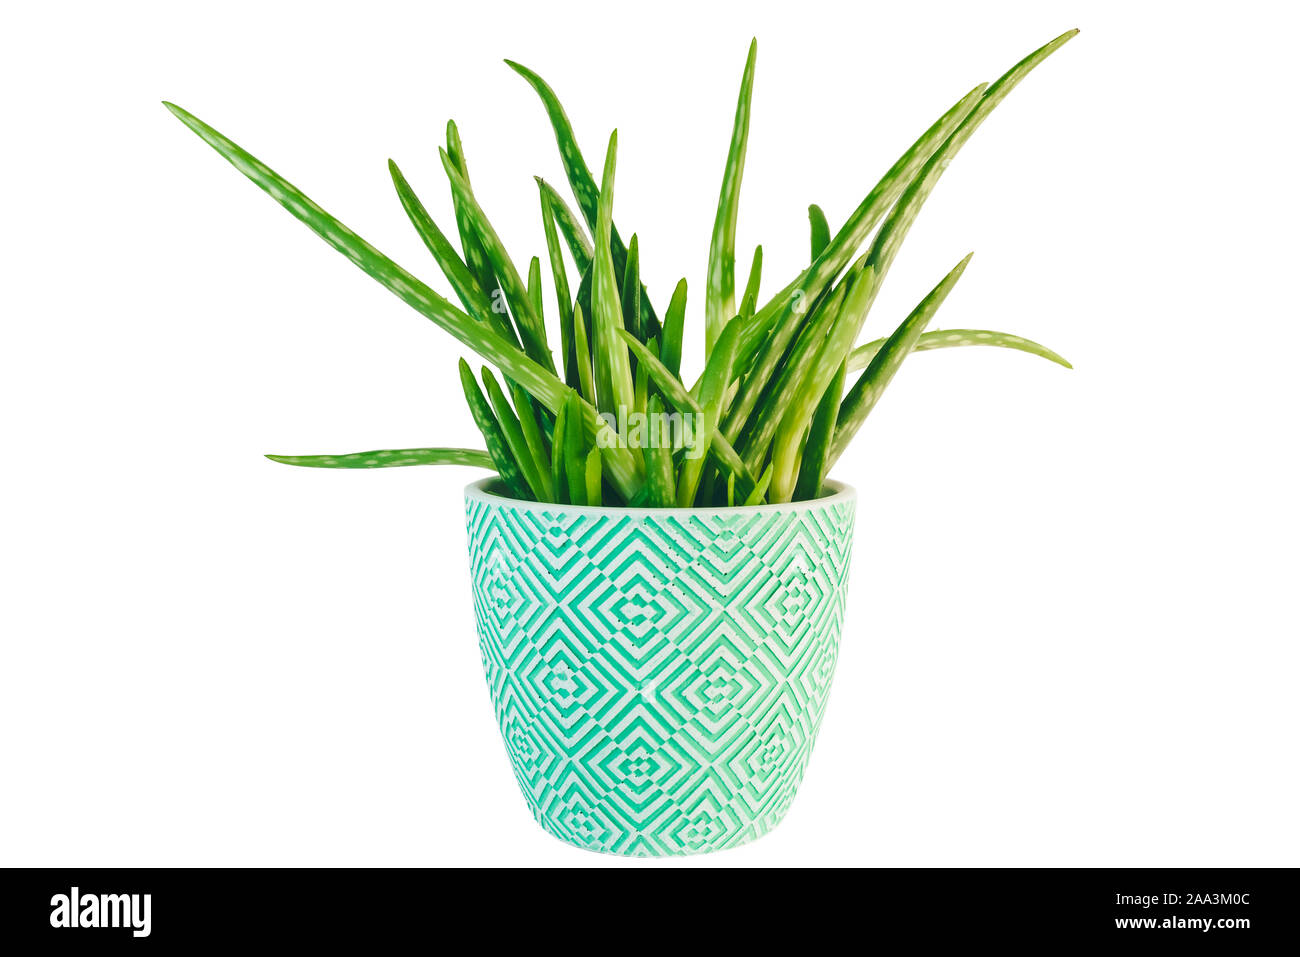 Topfpflanzen frisch grün Aloe Vera Pflanze auf weißem Hintergrund Stockfoto